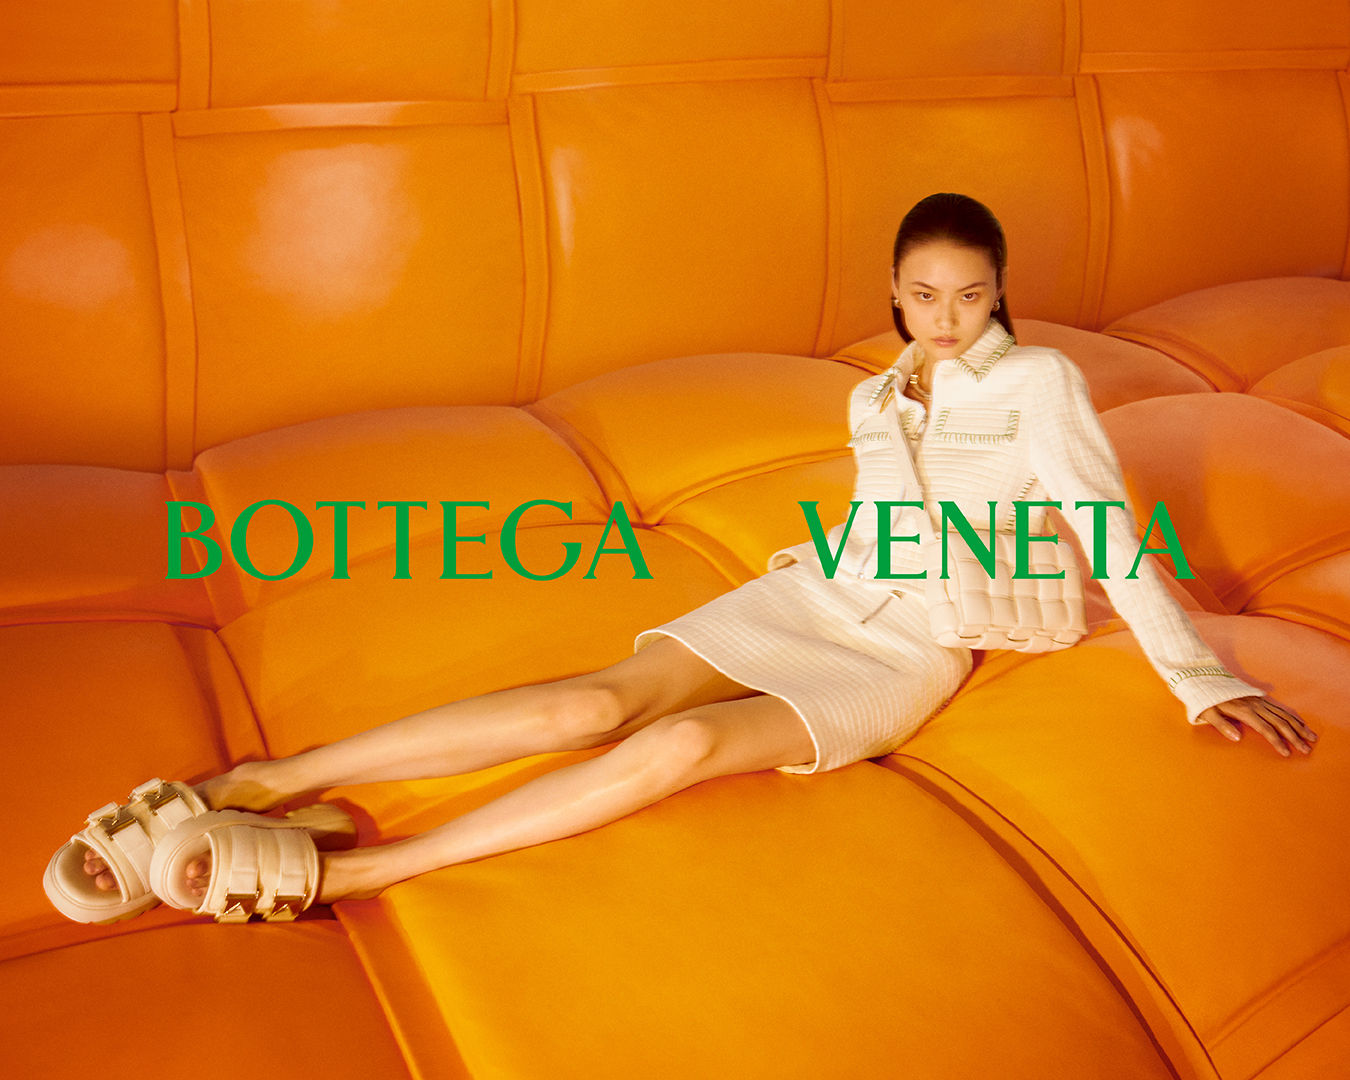 Bottega Veneta At Italy - Company Dynamics - News - Bobang Signage